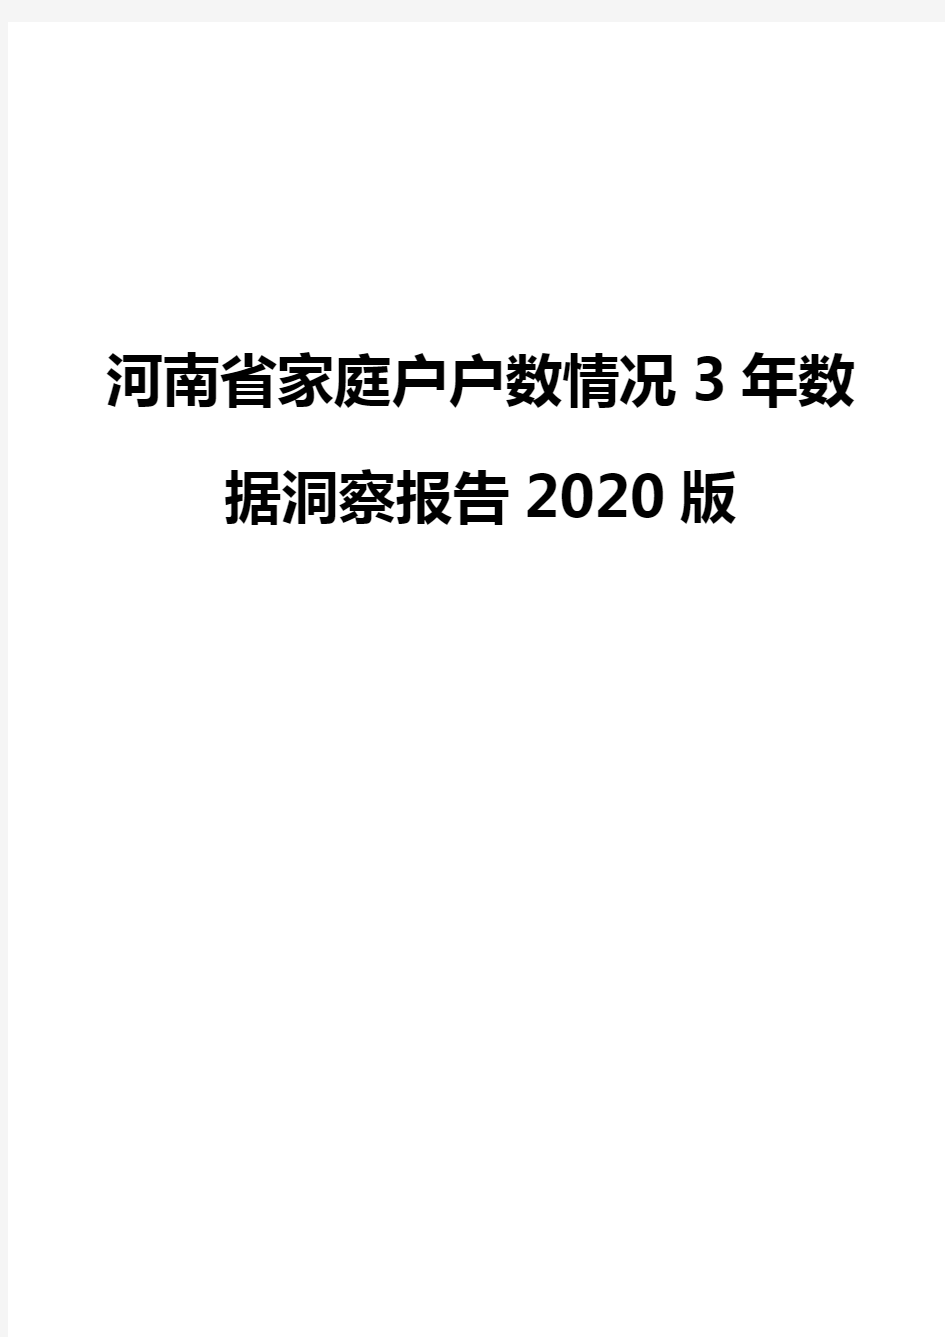 河南省家庭户户数情况3年数据洞察报告2020版